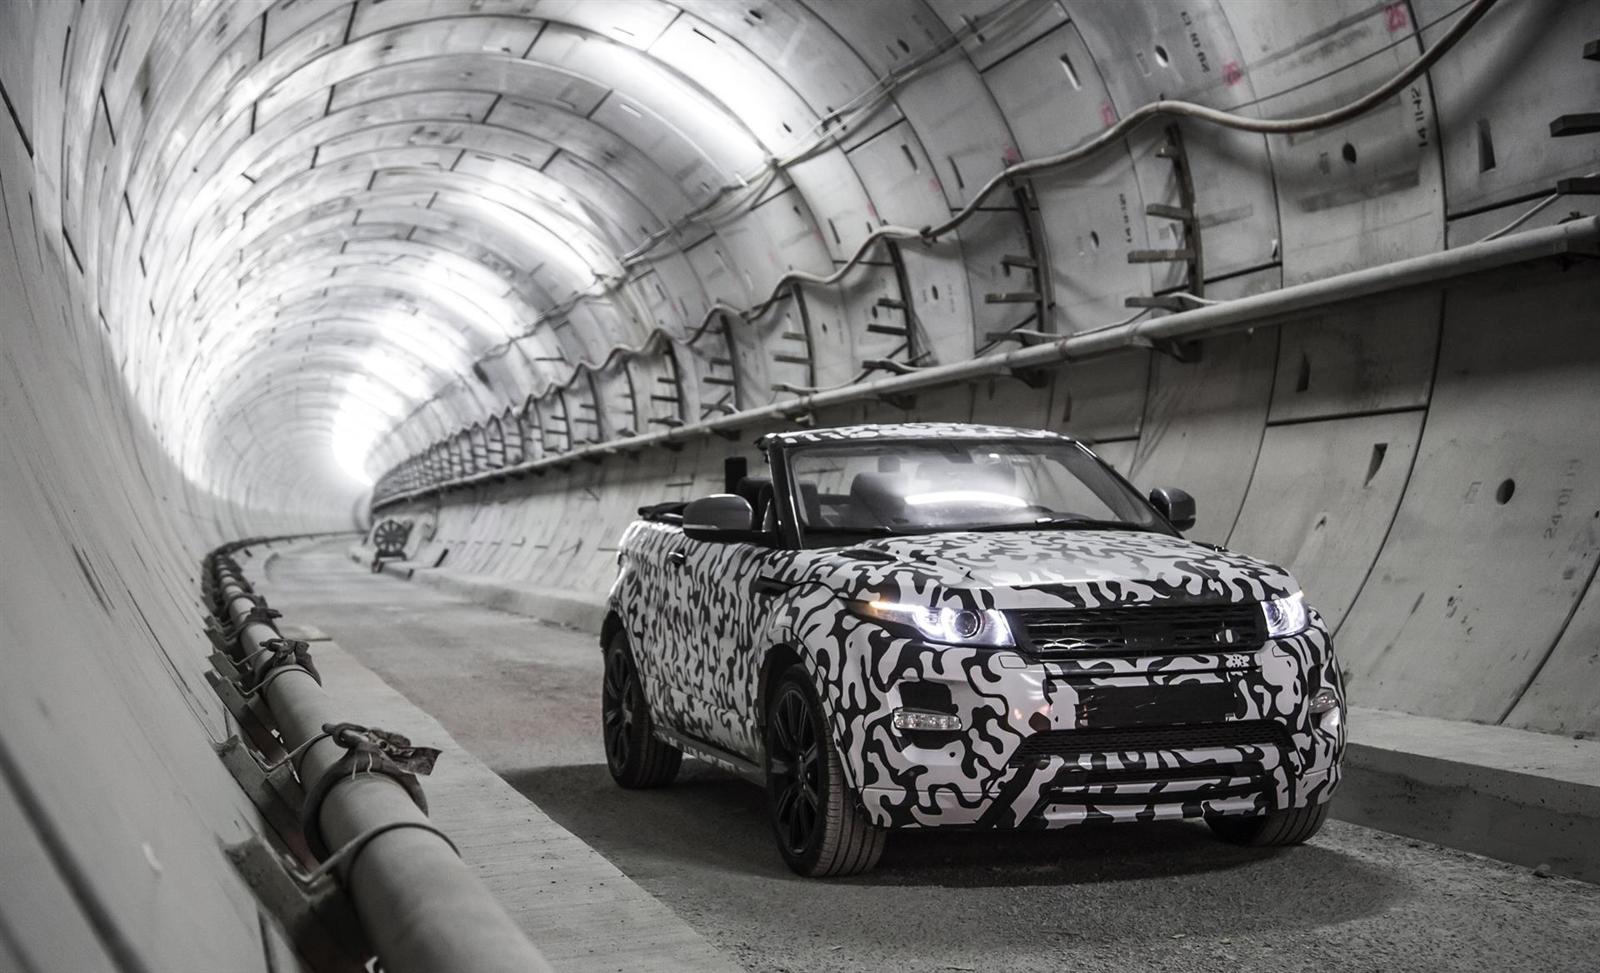 2016 Land Rover Range Rover Evoque Convertible